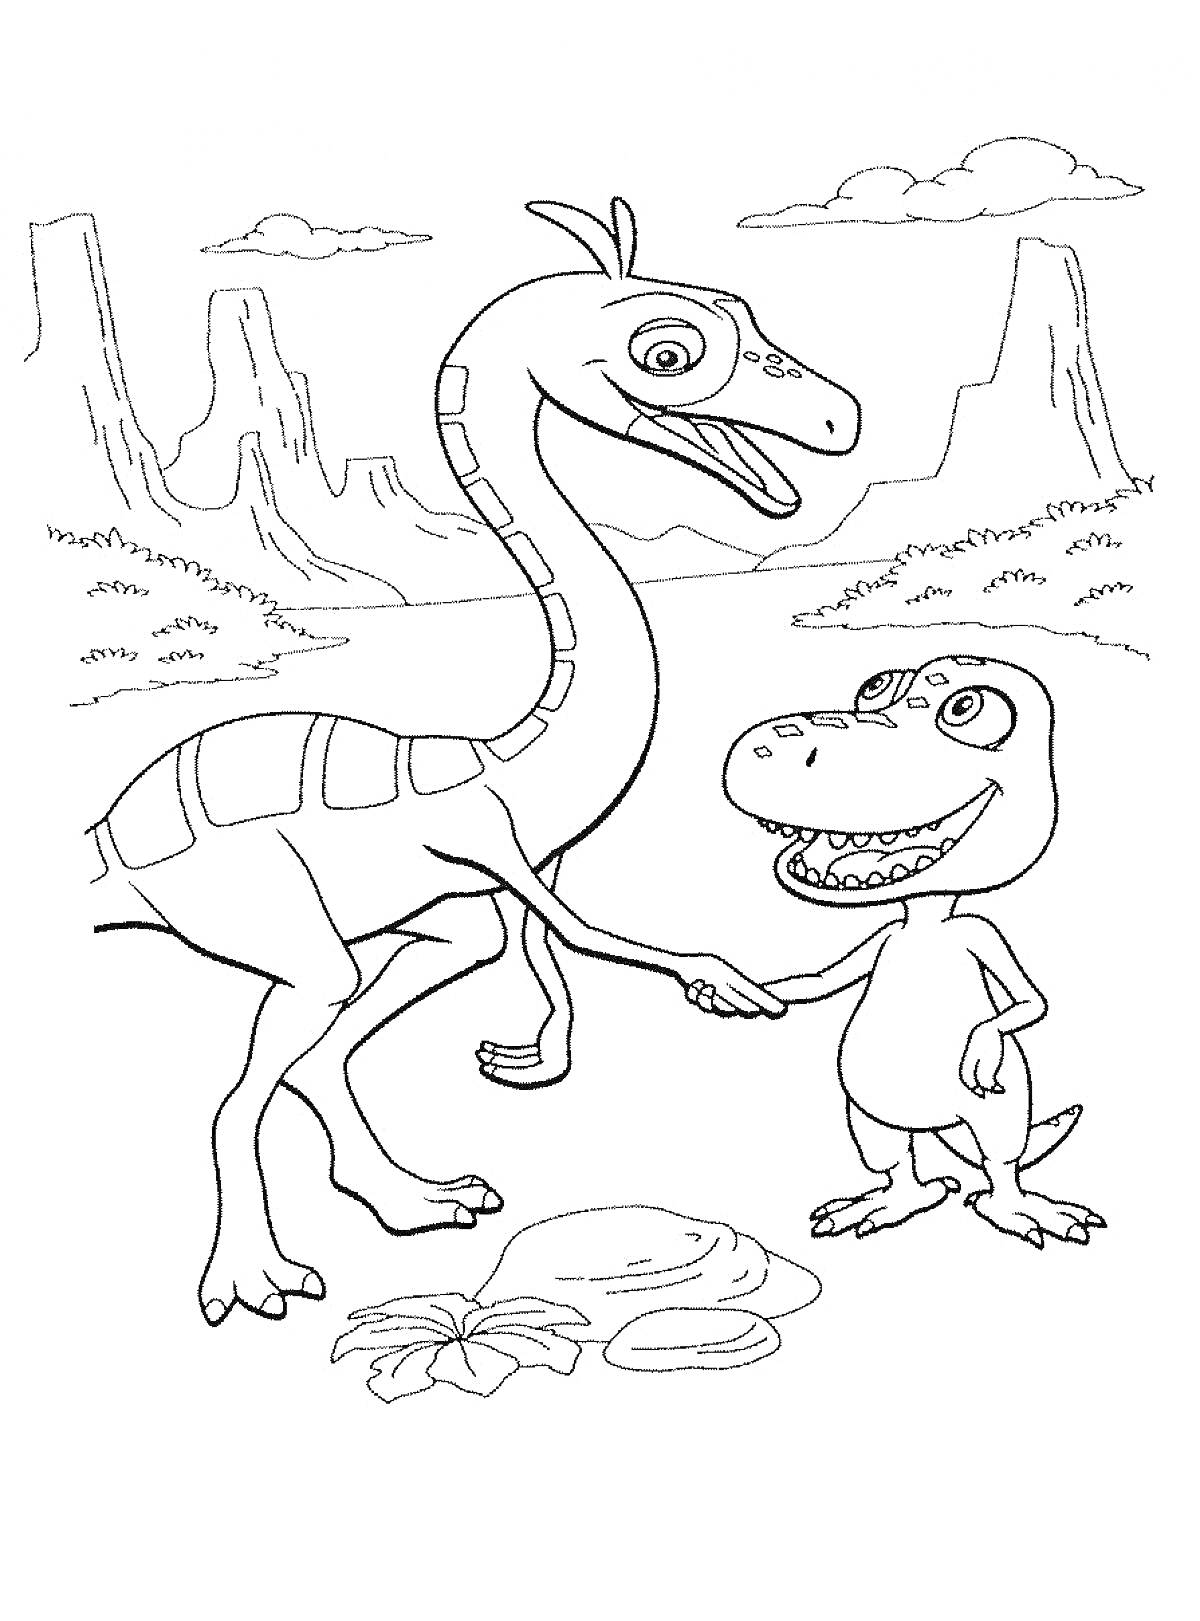 Два динозавра (теропод и зауропод), пожимающие друг другу руки на фоне горного пейзажа